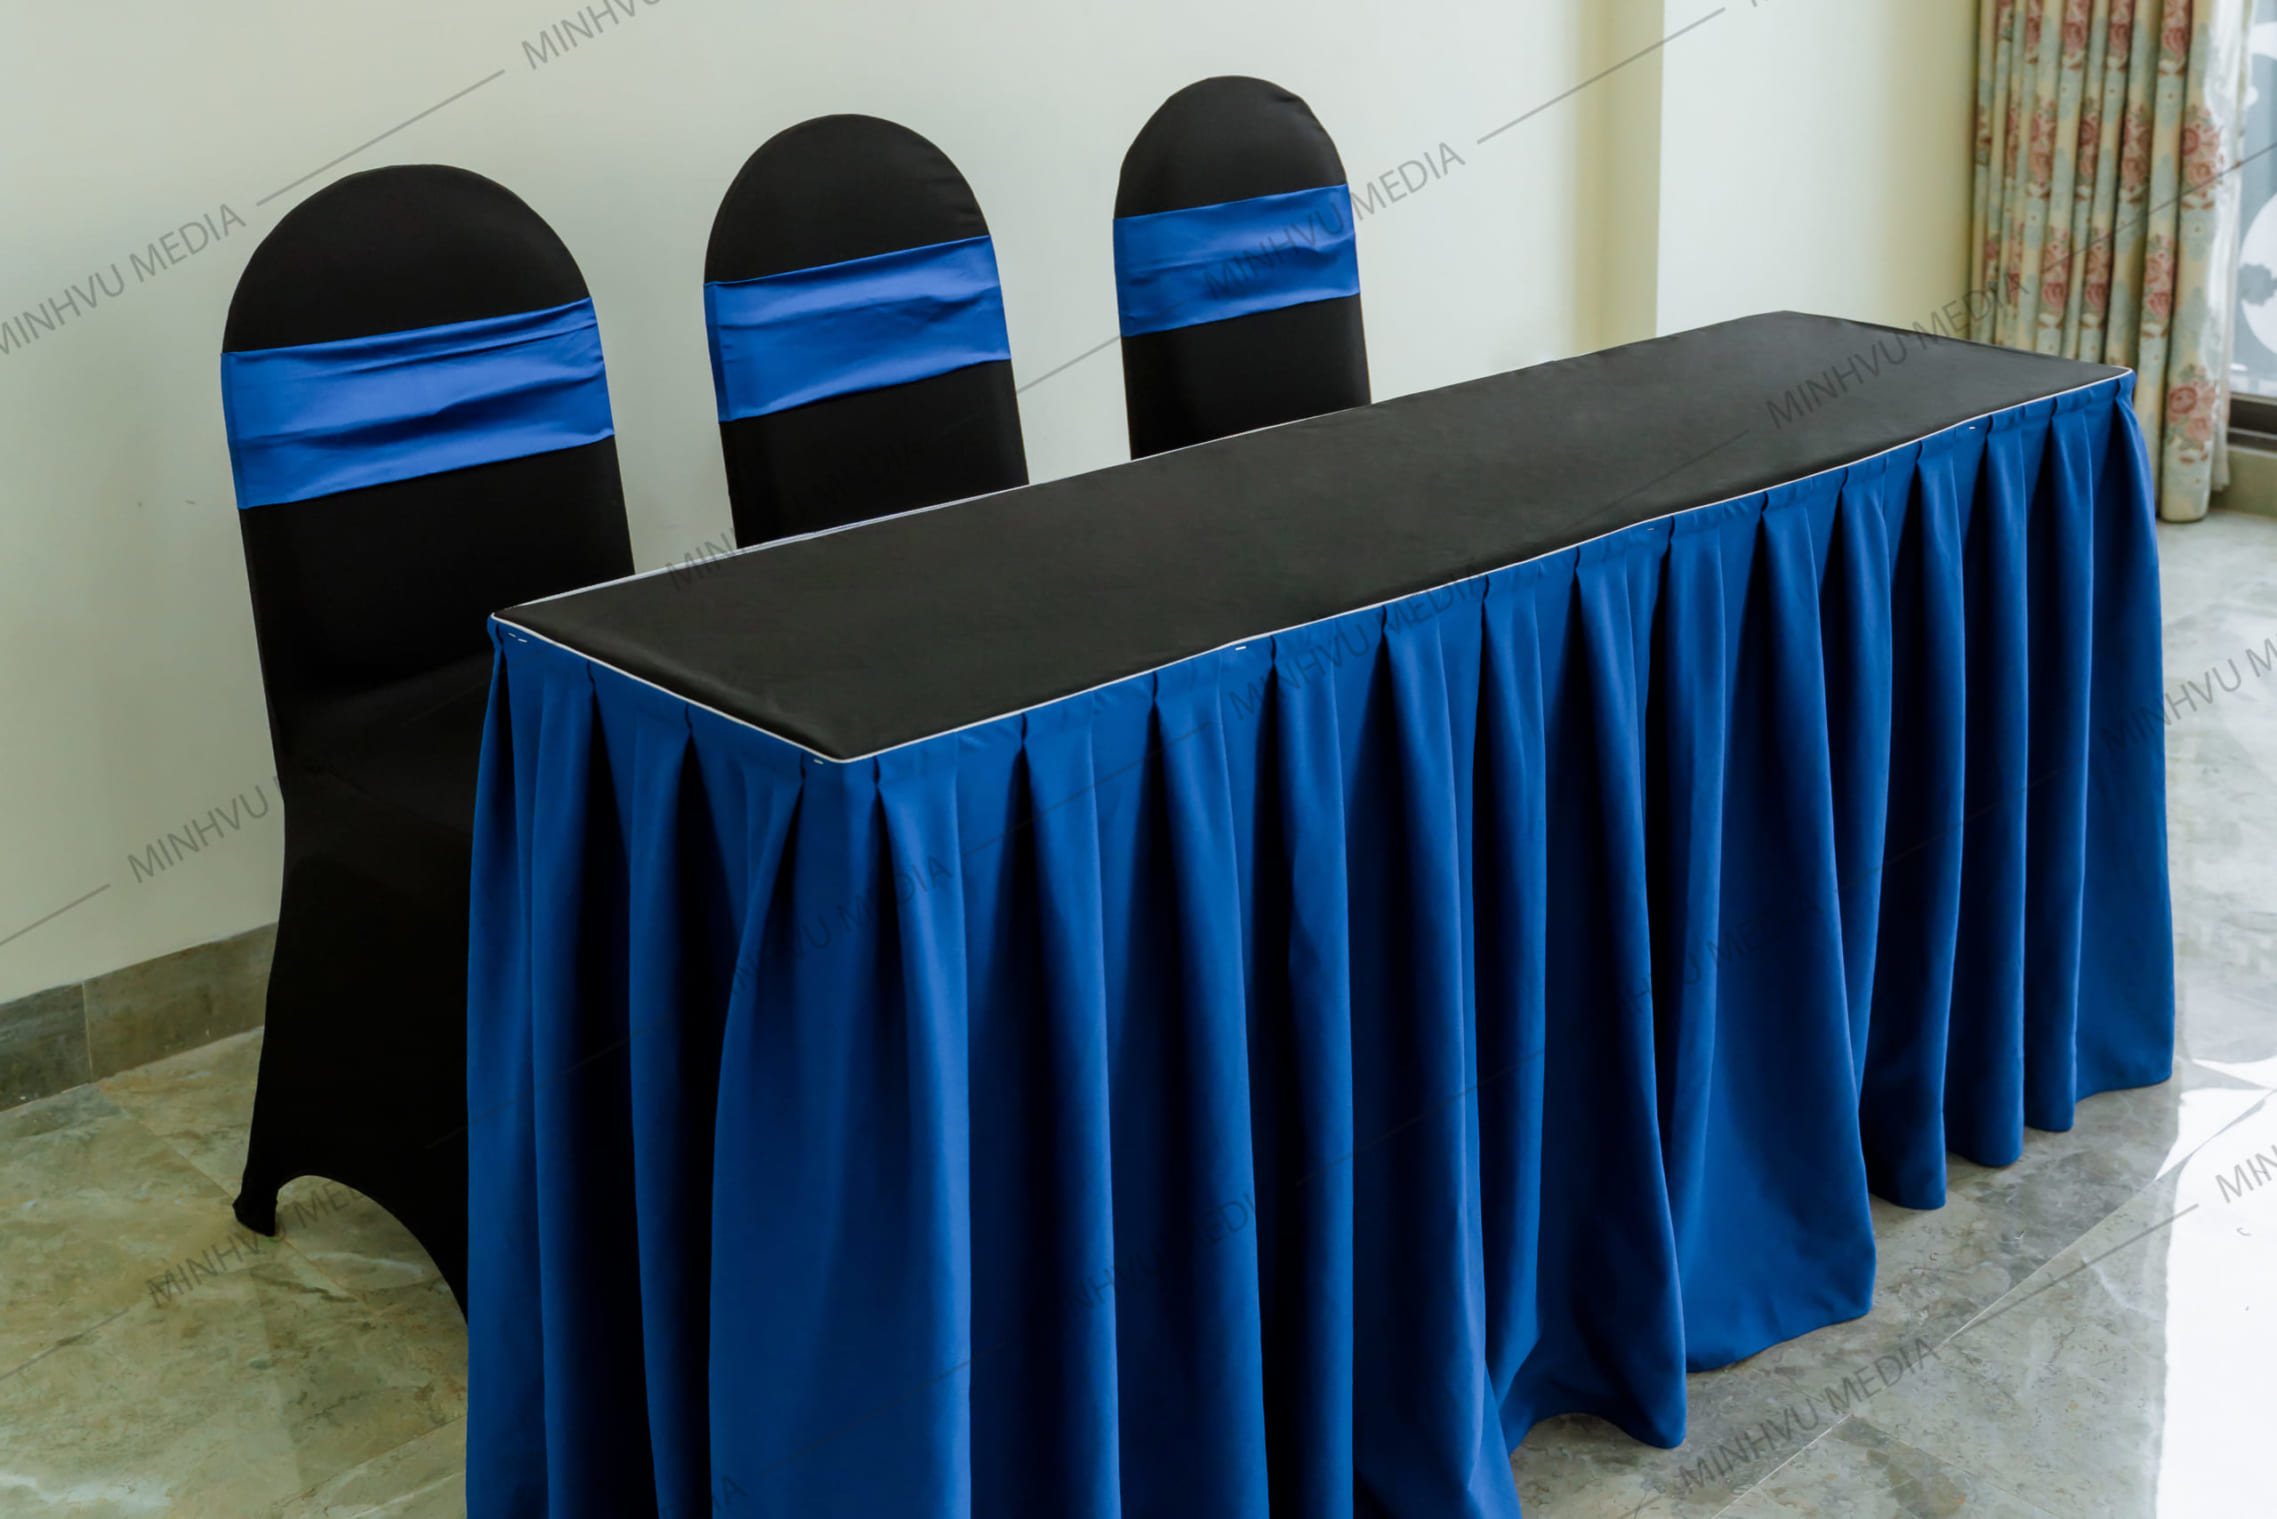 Bộ bàn ghế banquet chữ nhật đen, nơ xanh dương